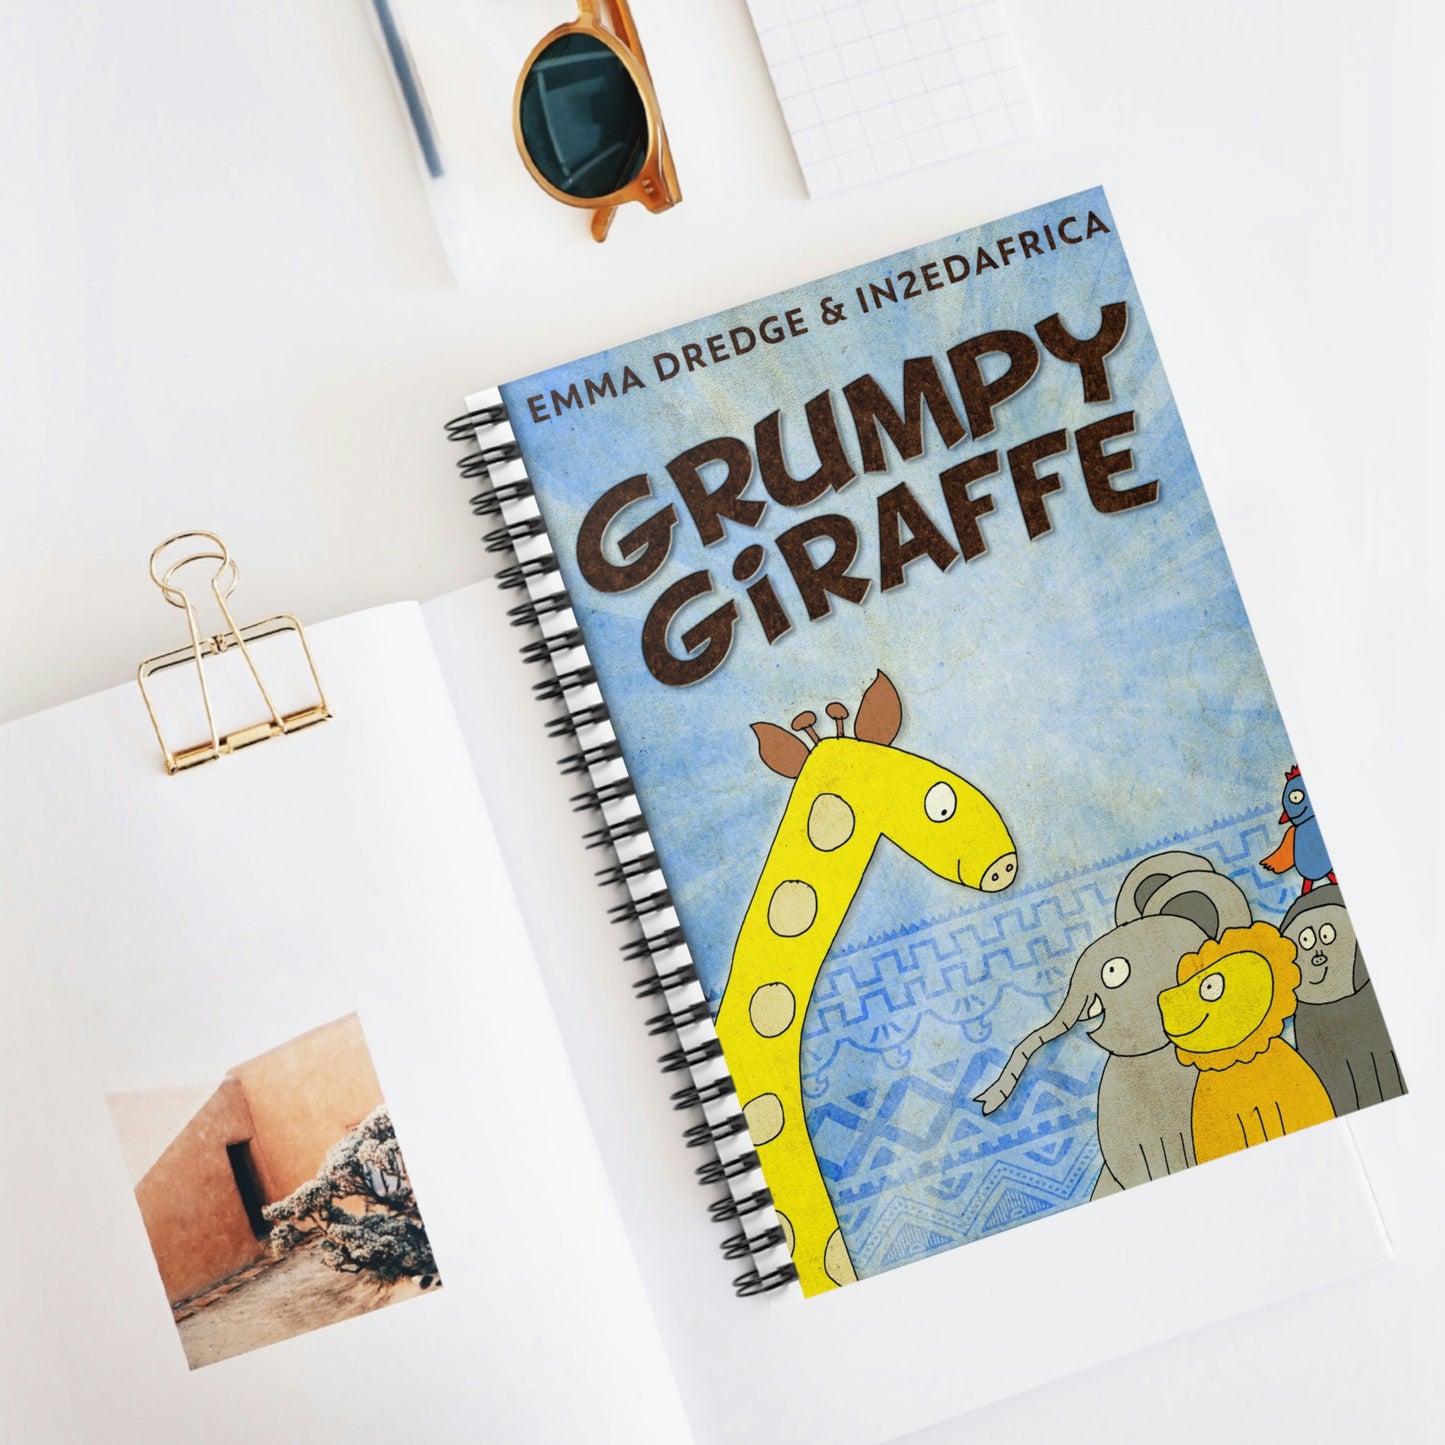 Grumpy Giraffe - Spiral Notebook